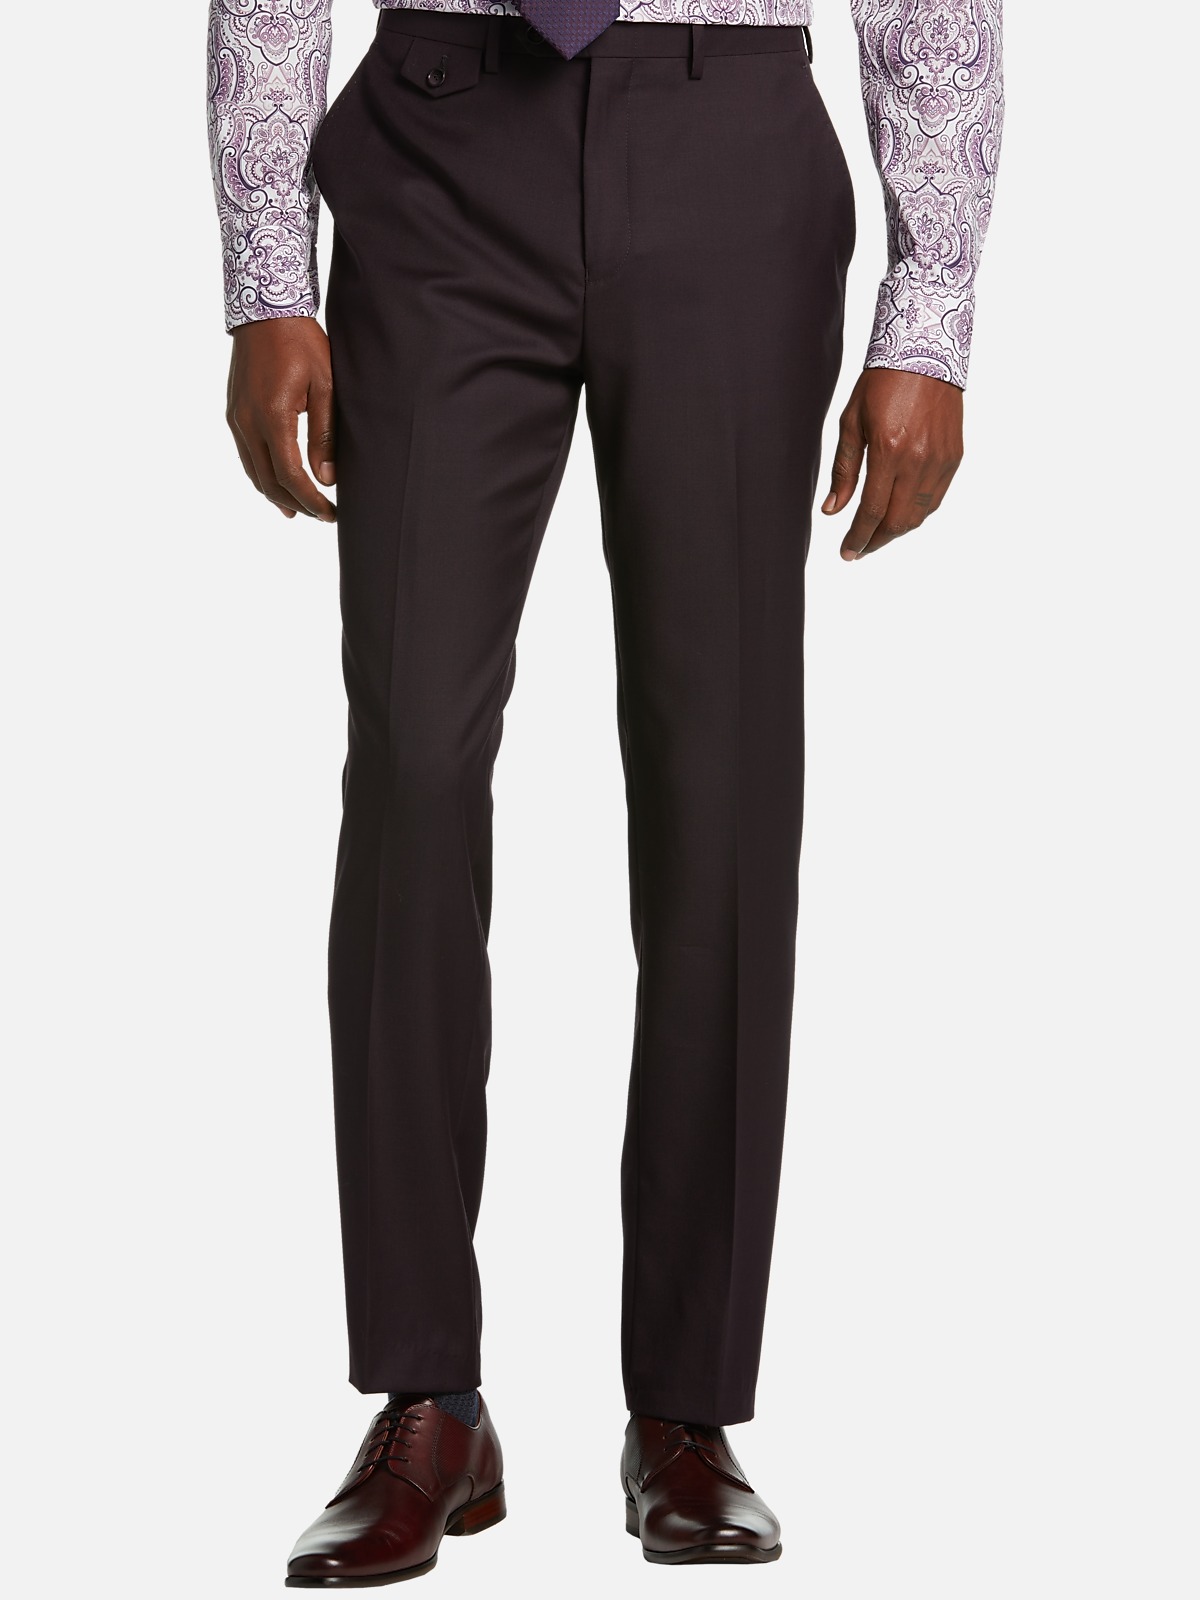 Tayion Classic Fit Suit Separates Pants, Pants